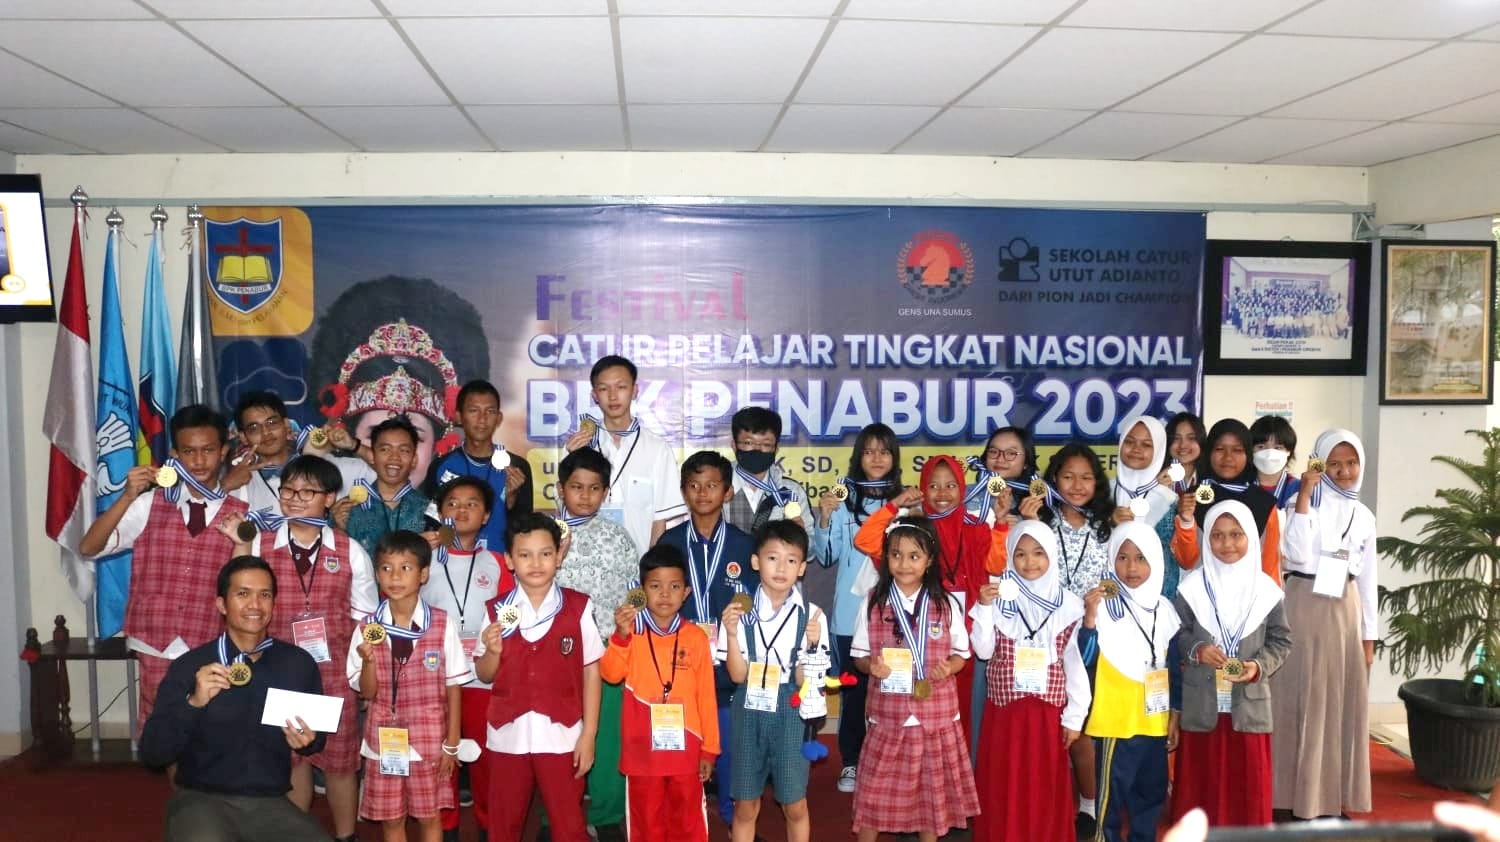 BPK PENABUR Gelar Festival Catur Pelajar Tingkat Nasional 2023, Salah Satunya di Cirebon